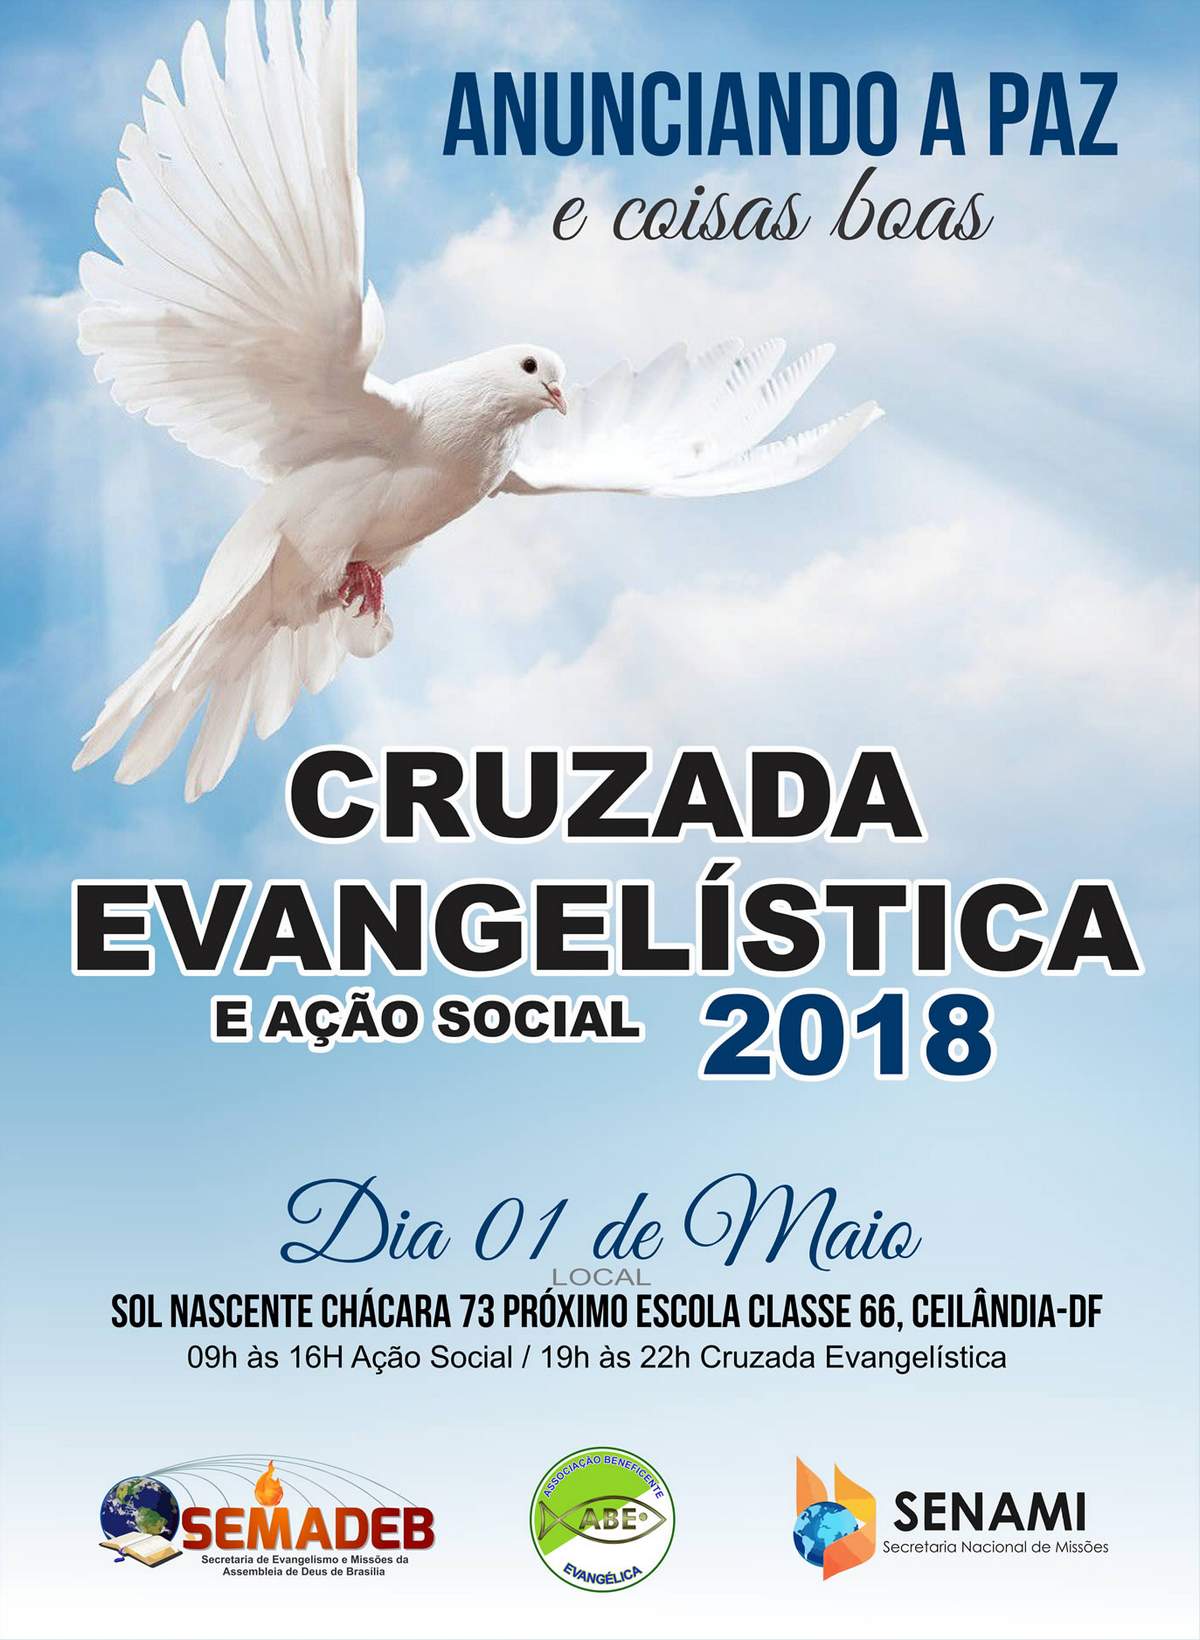 Cruzada Evangelística 2018 - SEMADEB